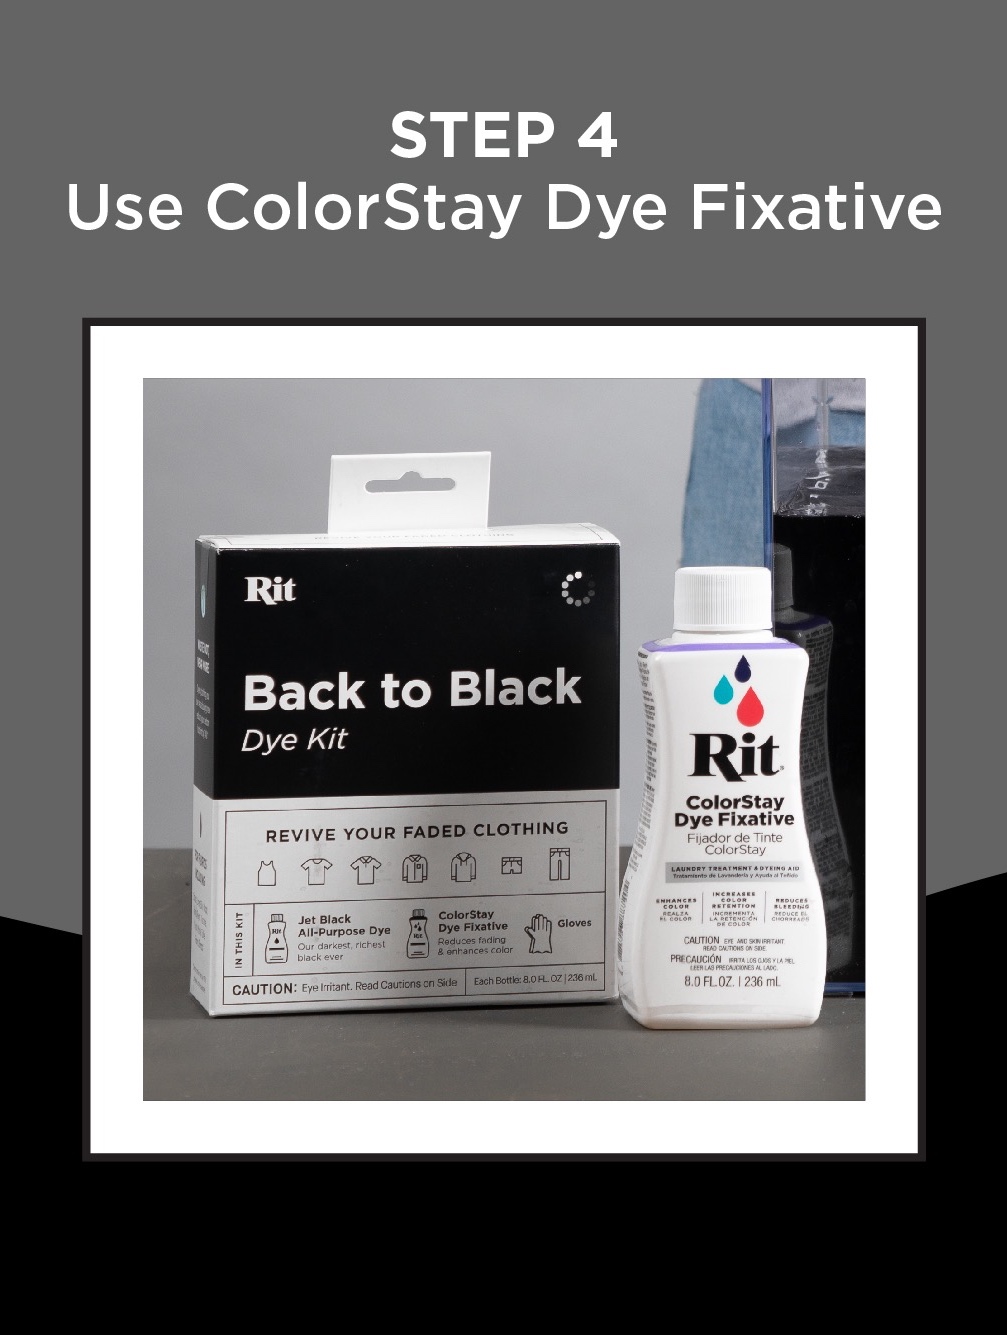 RIT: Back to Black Dye Kit